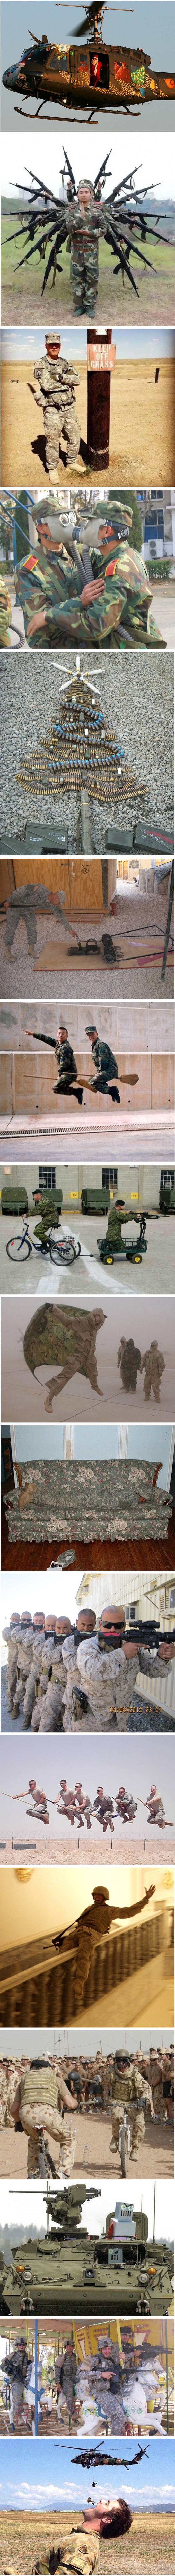 Urnebesne fotke koje dokazuju da i vojnici imaju smisla za humor